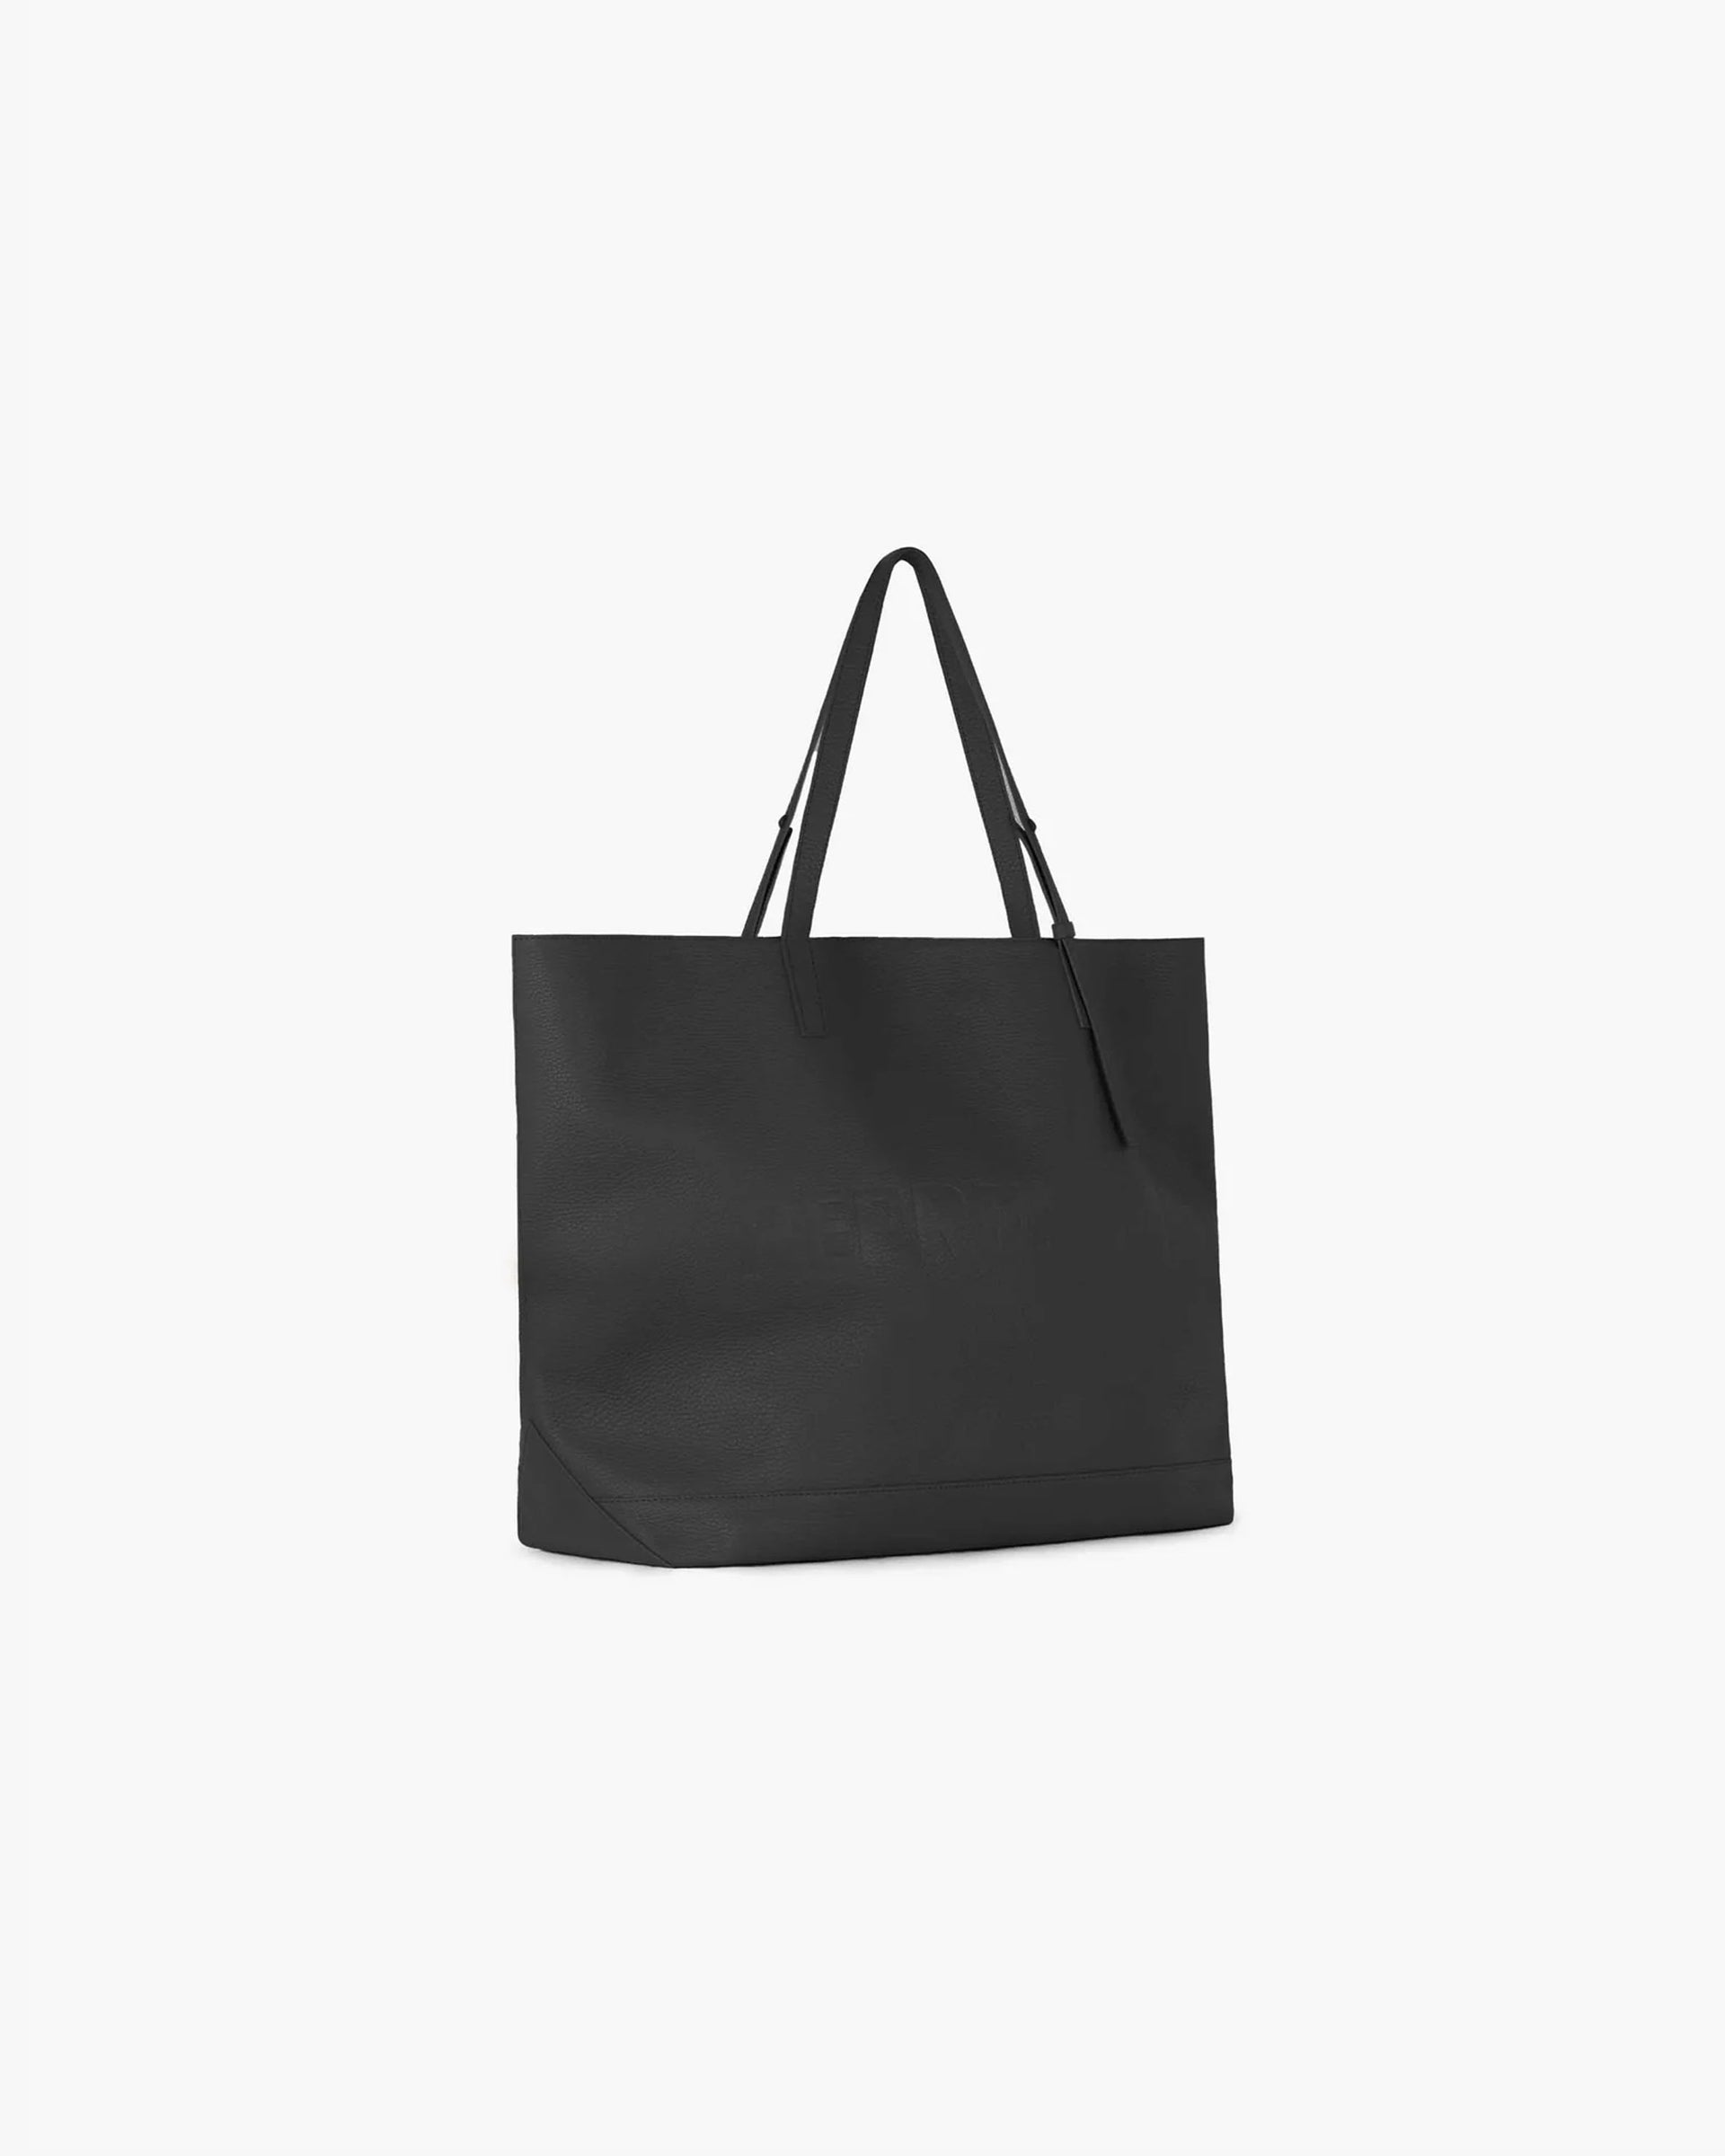 Leather Tote Bag | Black Accessories SC23 | Represent Clo